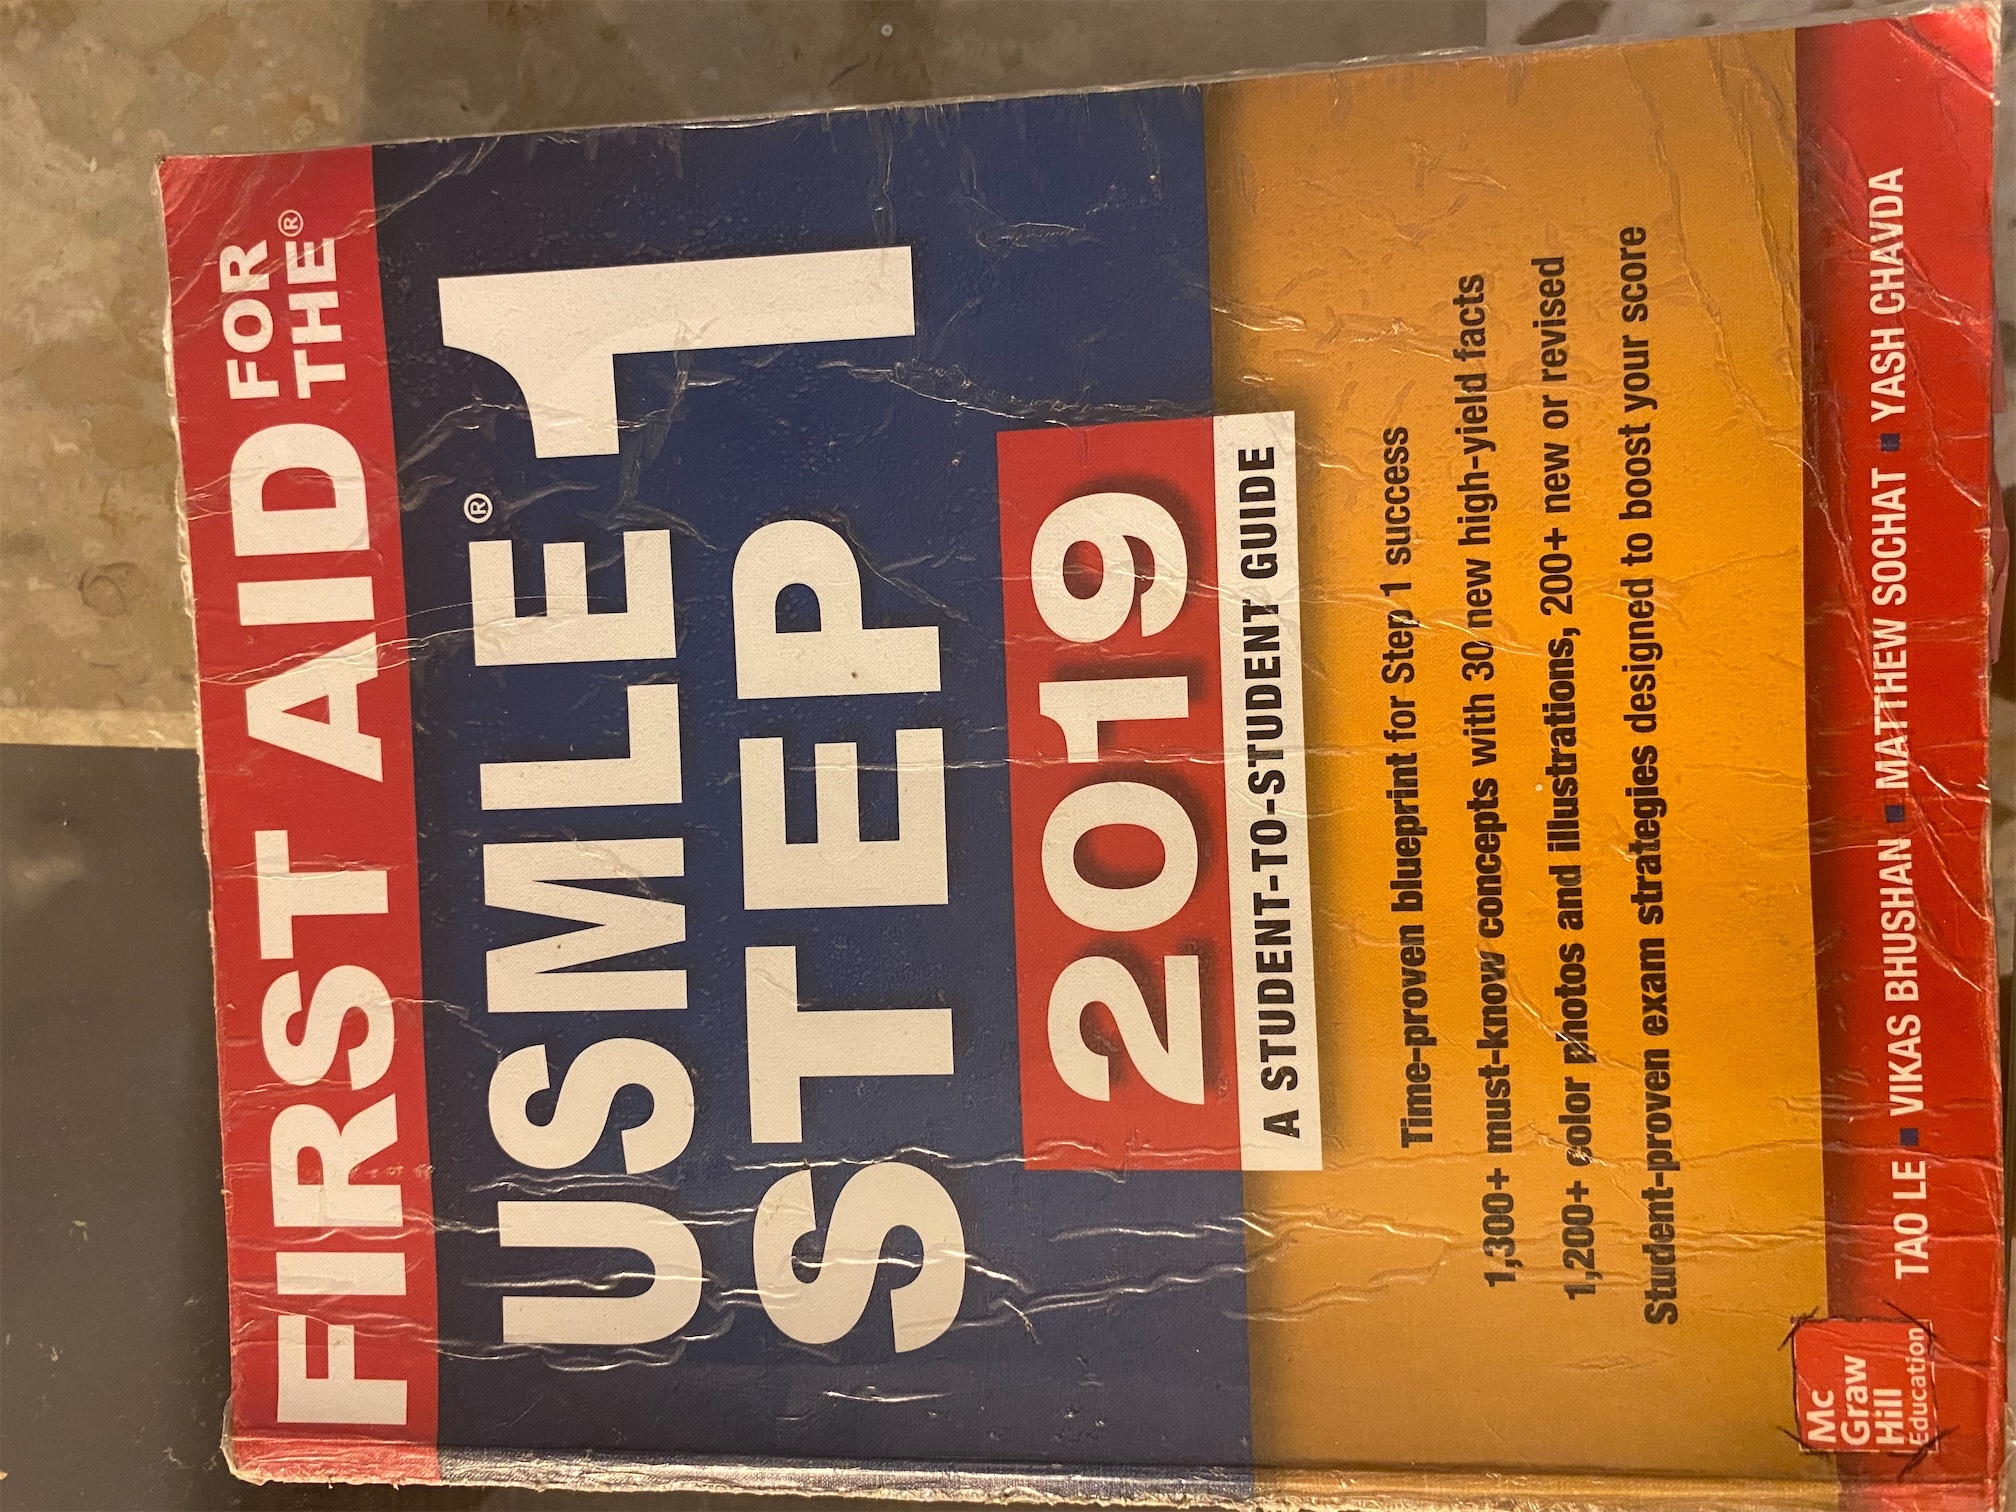 libros y revistas - Usmle step 1 First Aid 2019